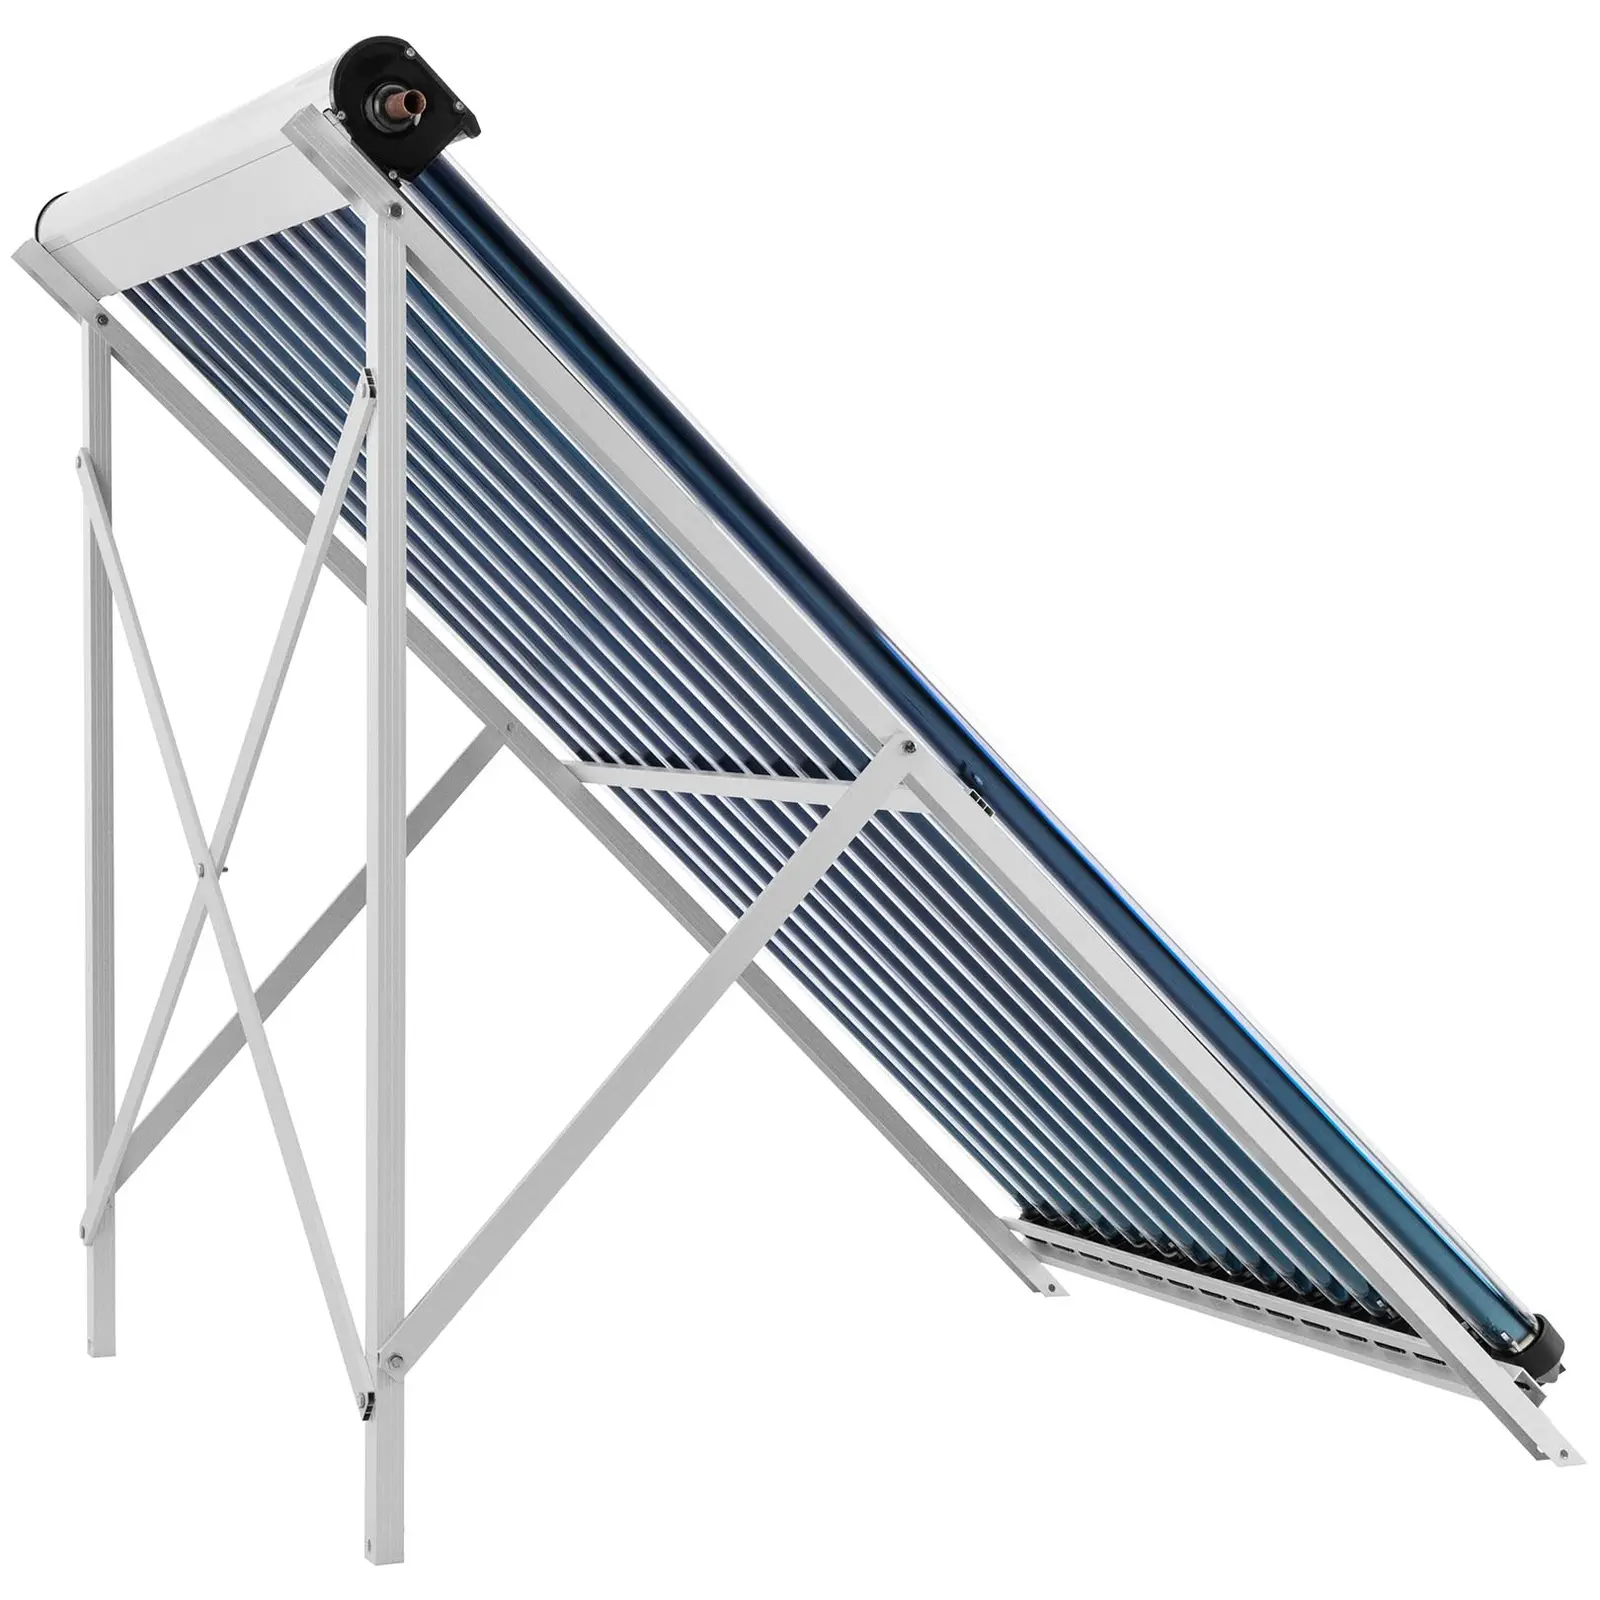 Capteur solaire à tubes sous vide - solaire thermique - 15 tubes - 120 - 150 L - 1.2 m² - -45 - 90 °C